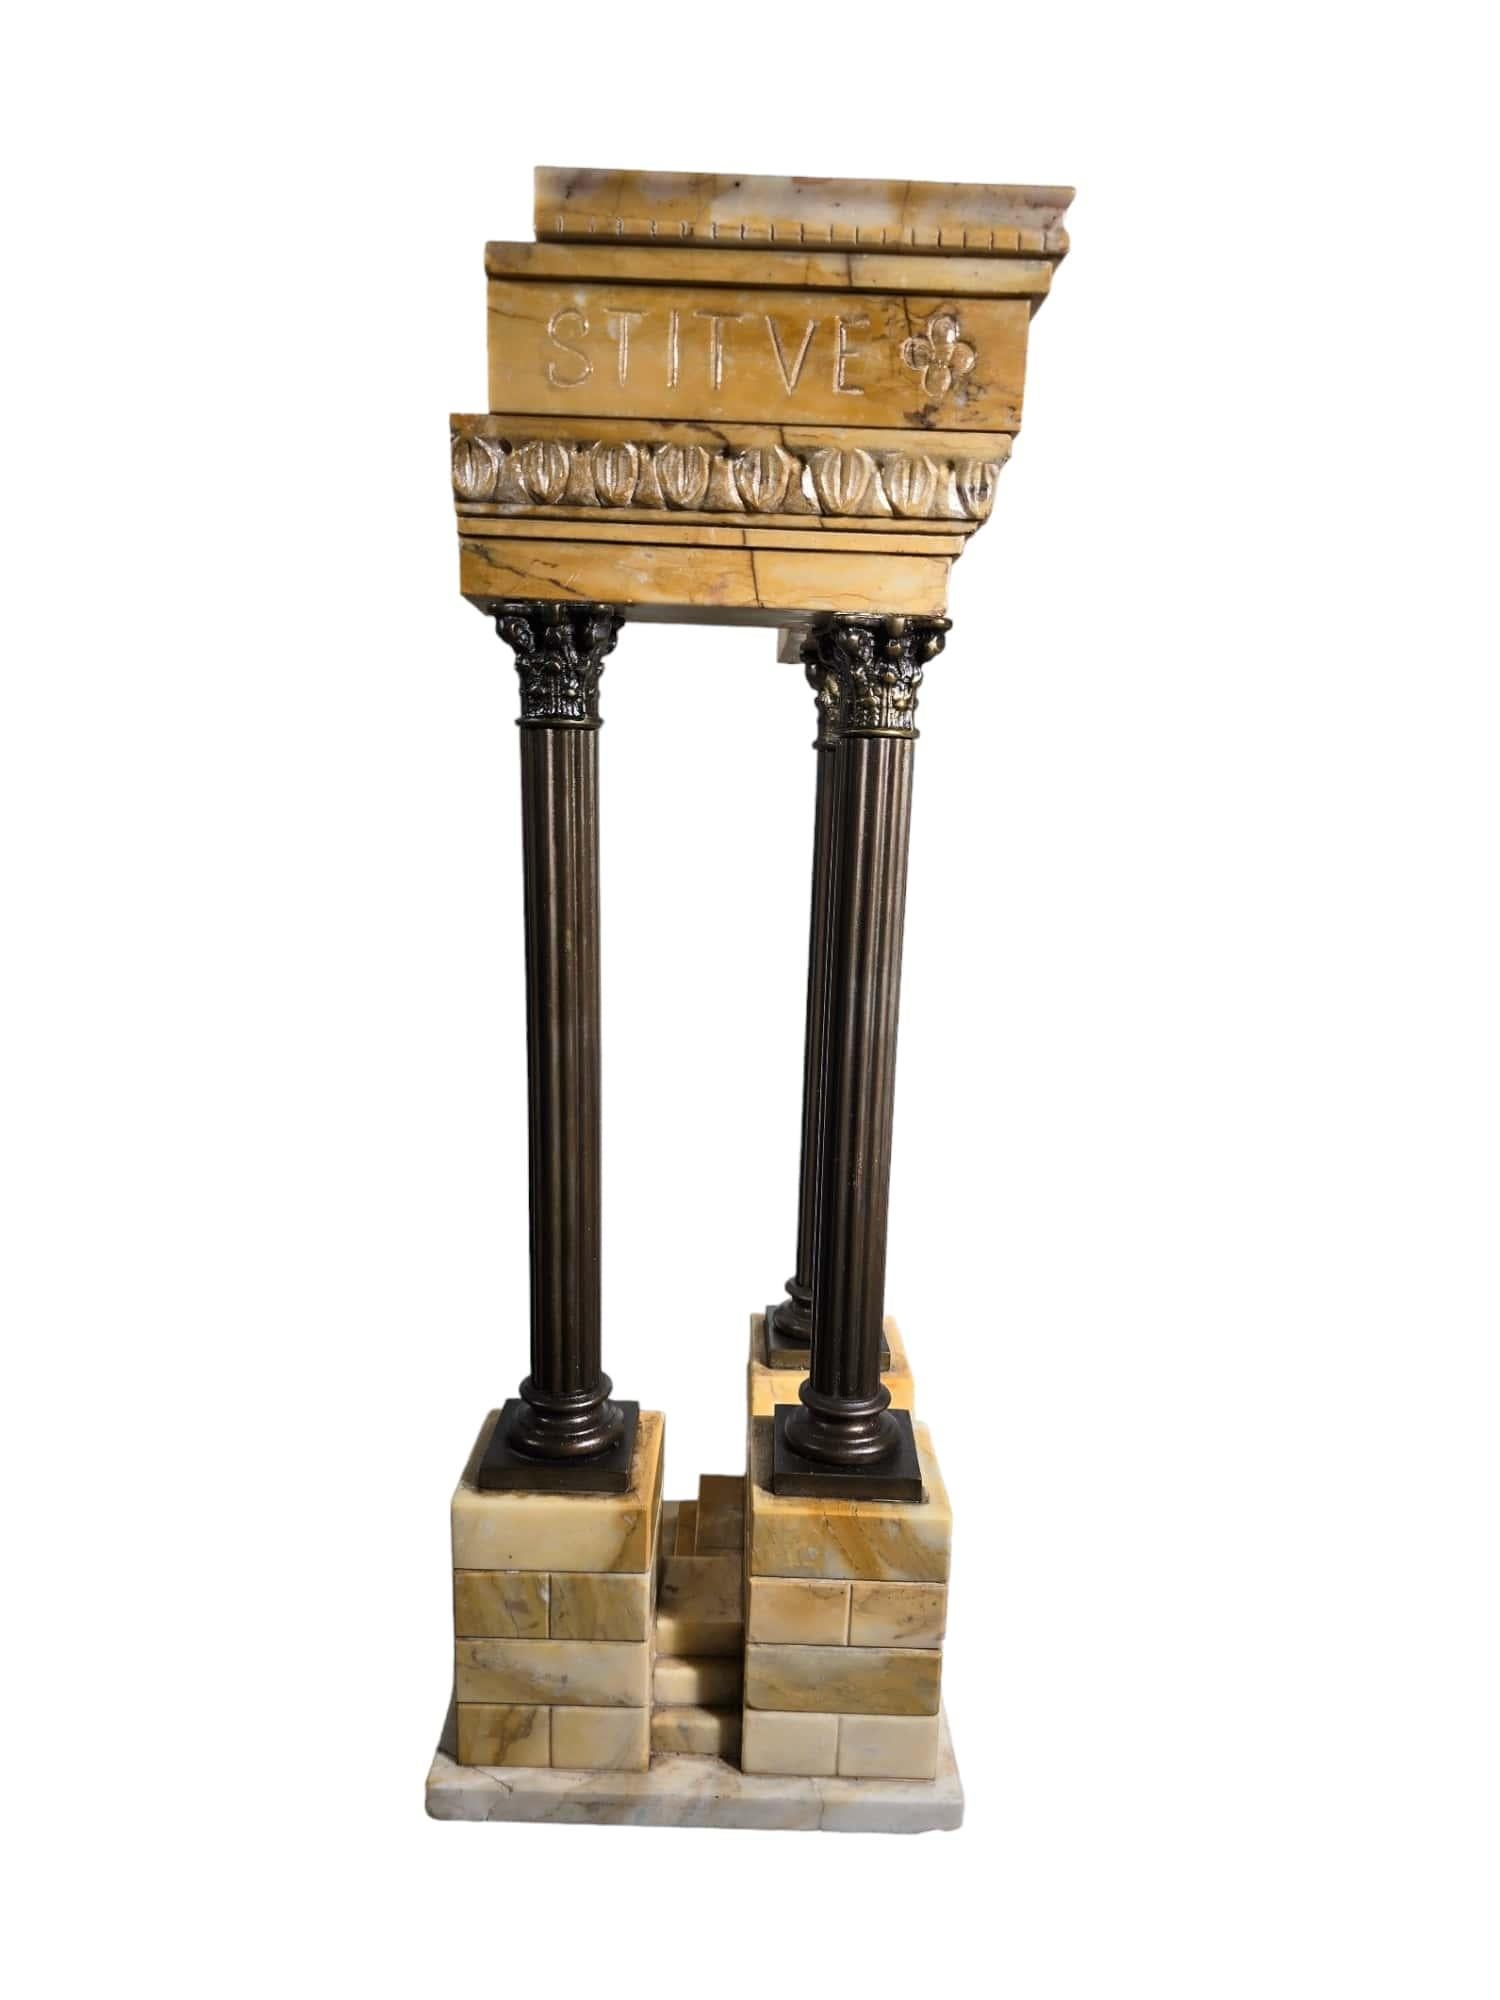 Dieses exquisite Modell des Vespasian-Tempels aus Giallo-Antico-Marmor und Bronze ist ein Beispiel für die außergewöhnliche Handwerkskunst und künstlerische Meisterschaft der Grand-Tour-Epoche. Dieses um 1920 in einer italienischen Werkstatt